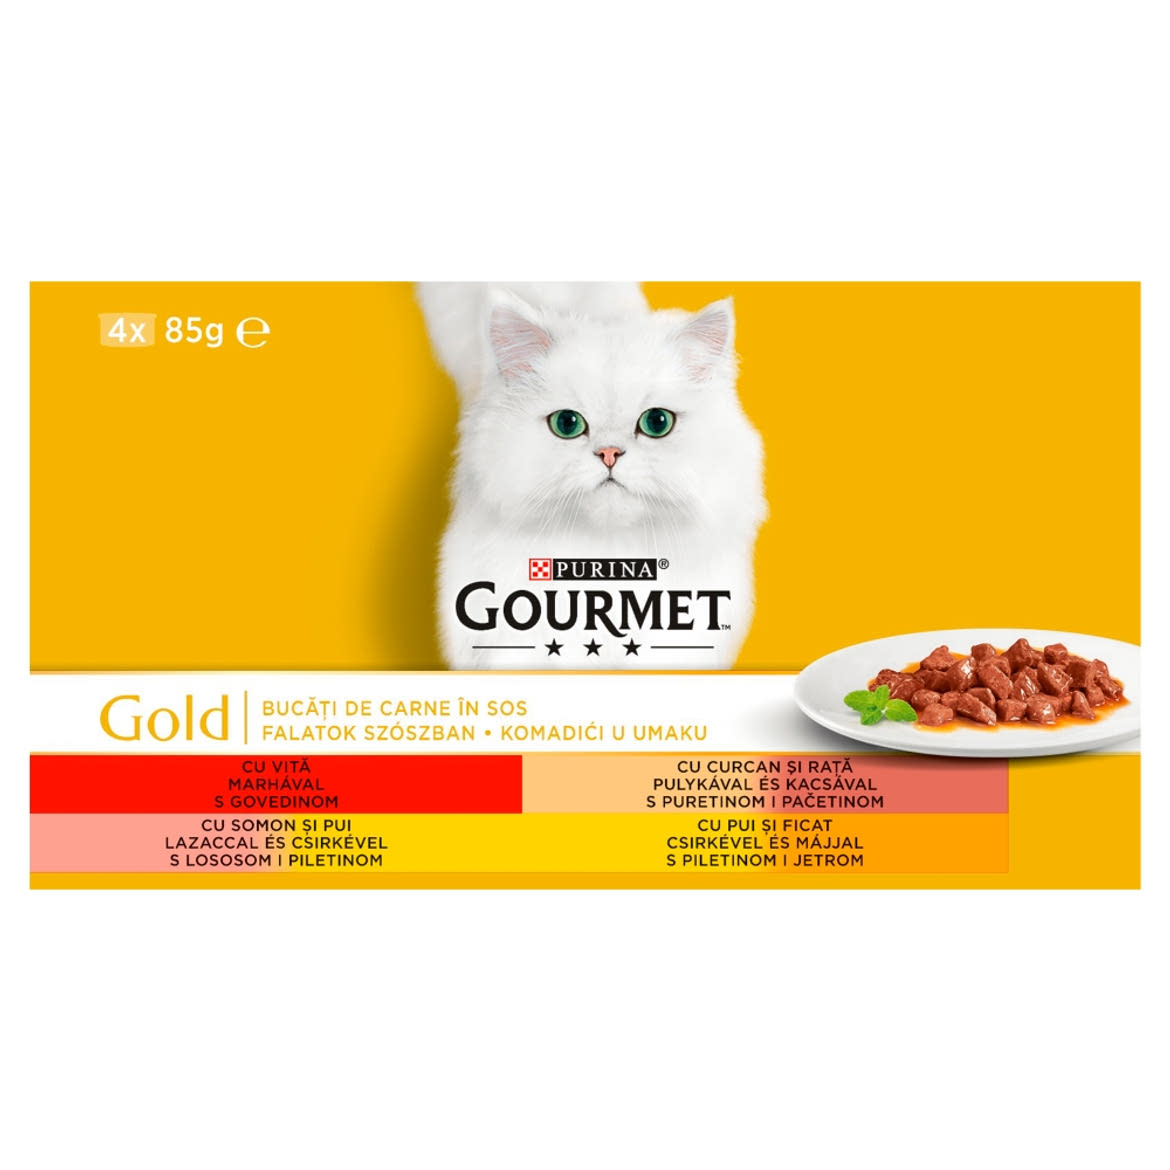 Gourmet Gold teljes értékű állateledel felnőtt macskák számára 4 x 85 g